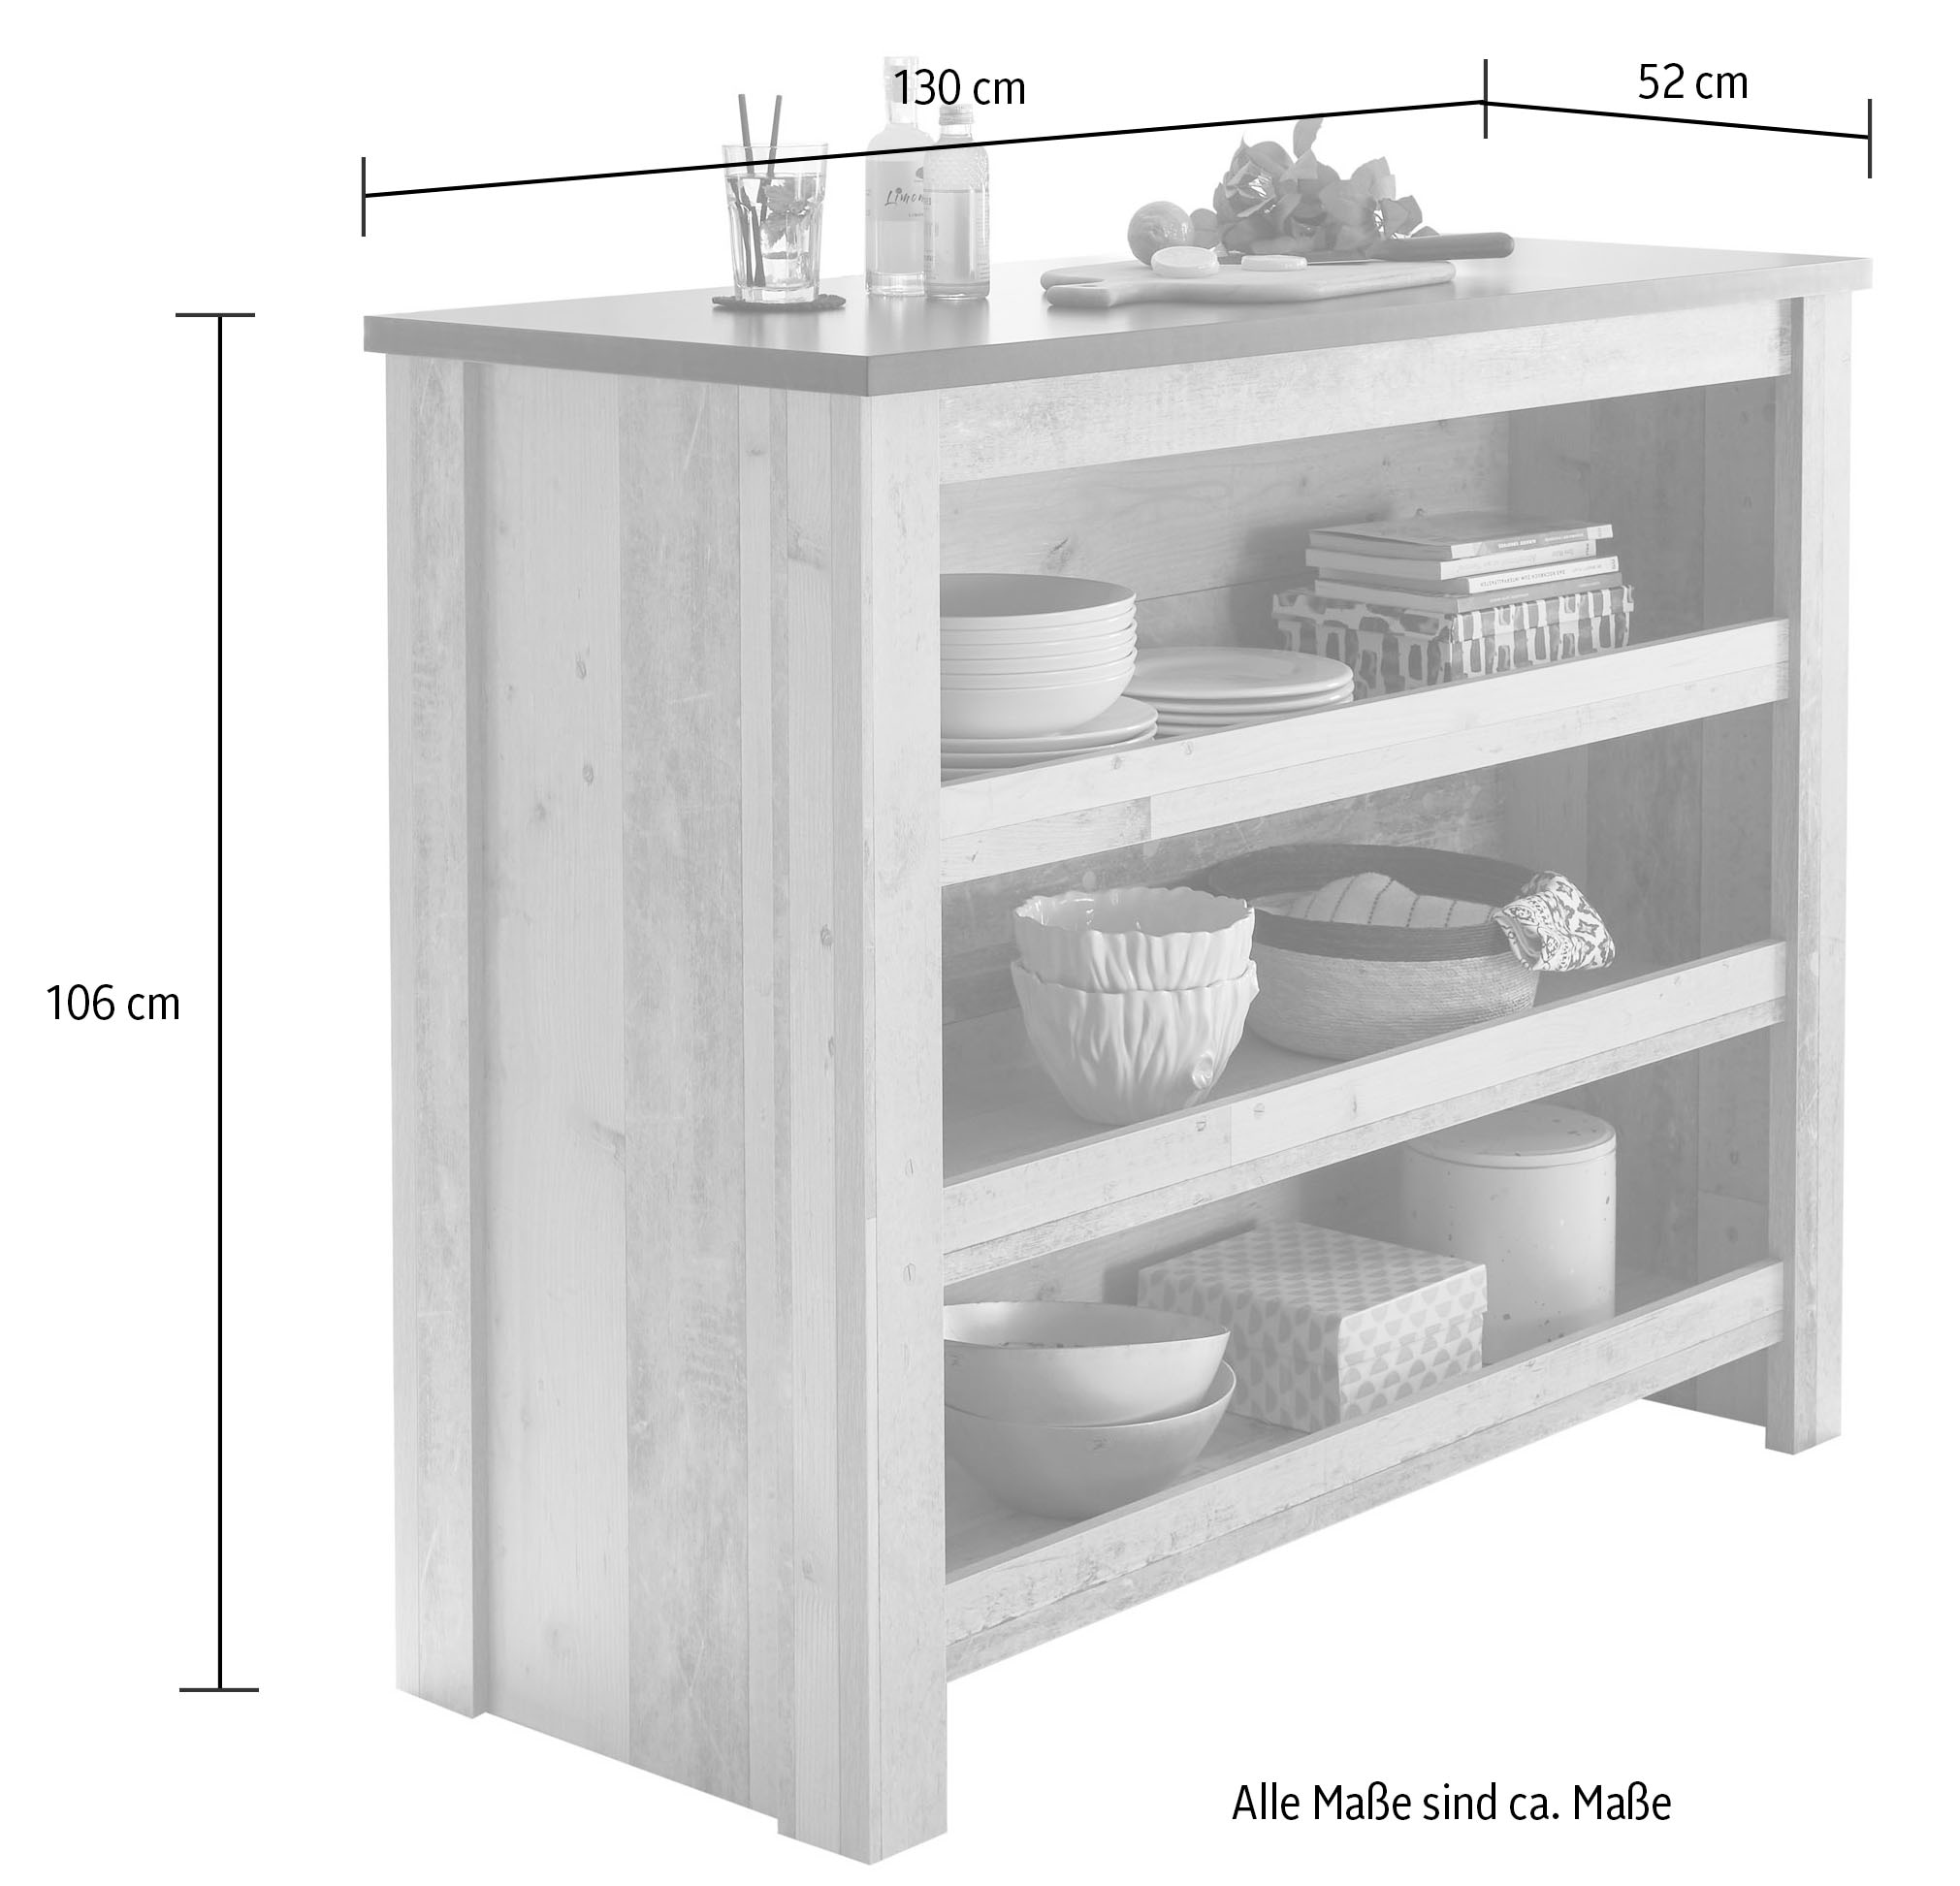 Home affaire Küche »Sherwood«, Breite 131 cm, ohne E-Geräte